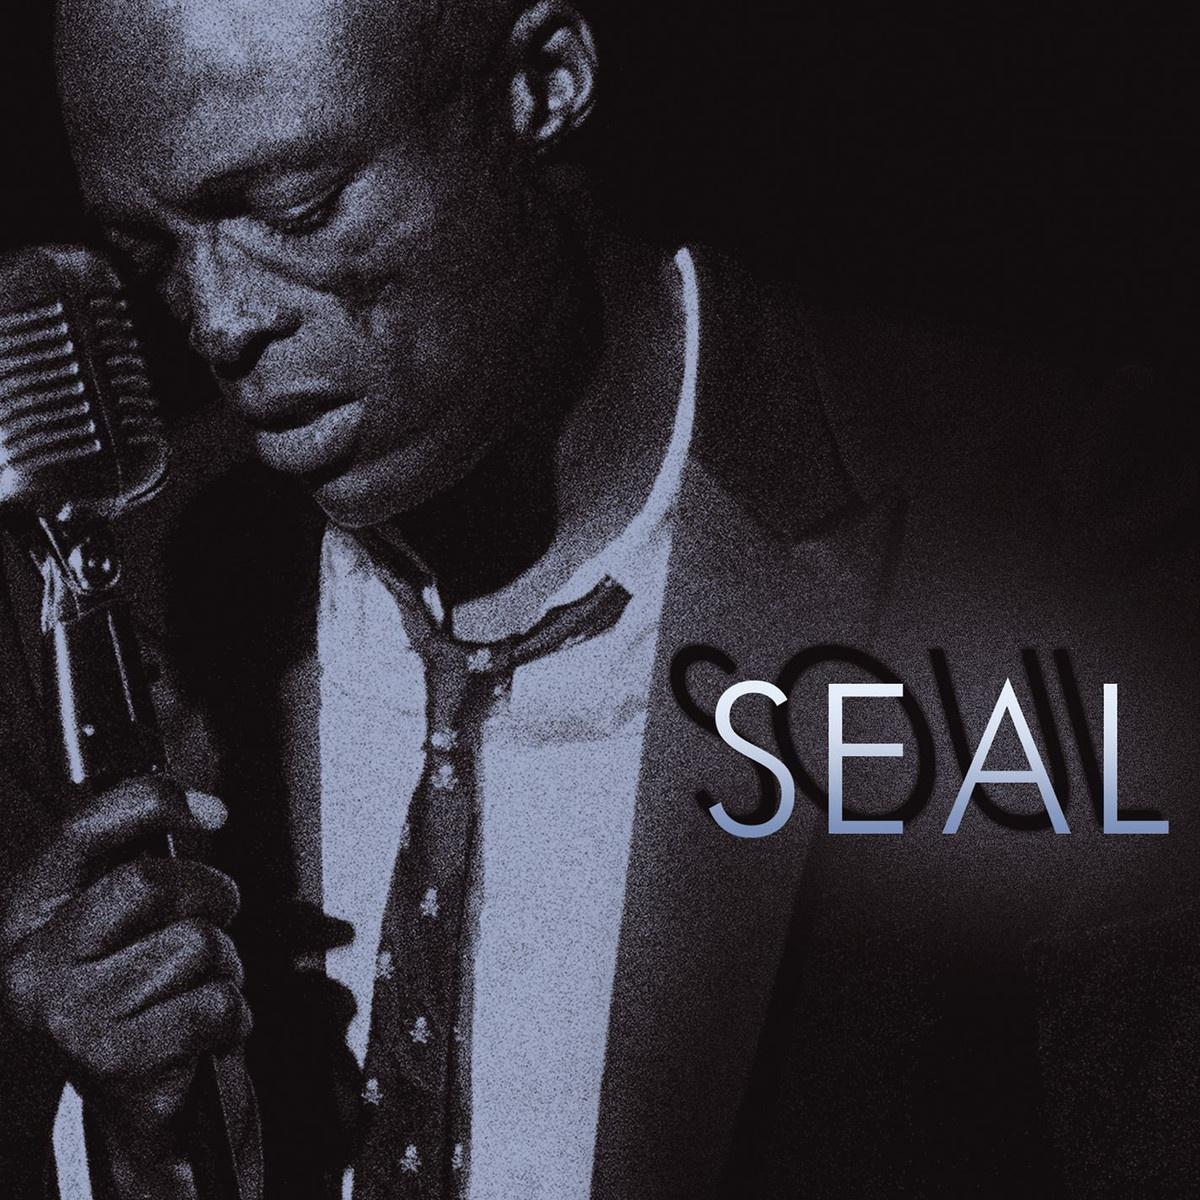 vip单曲 歌手:seal 所属专辑:soul 包含这首歌的歌单 相似歌曲 网易云